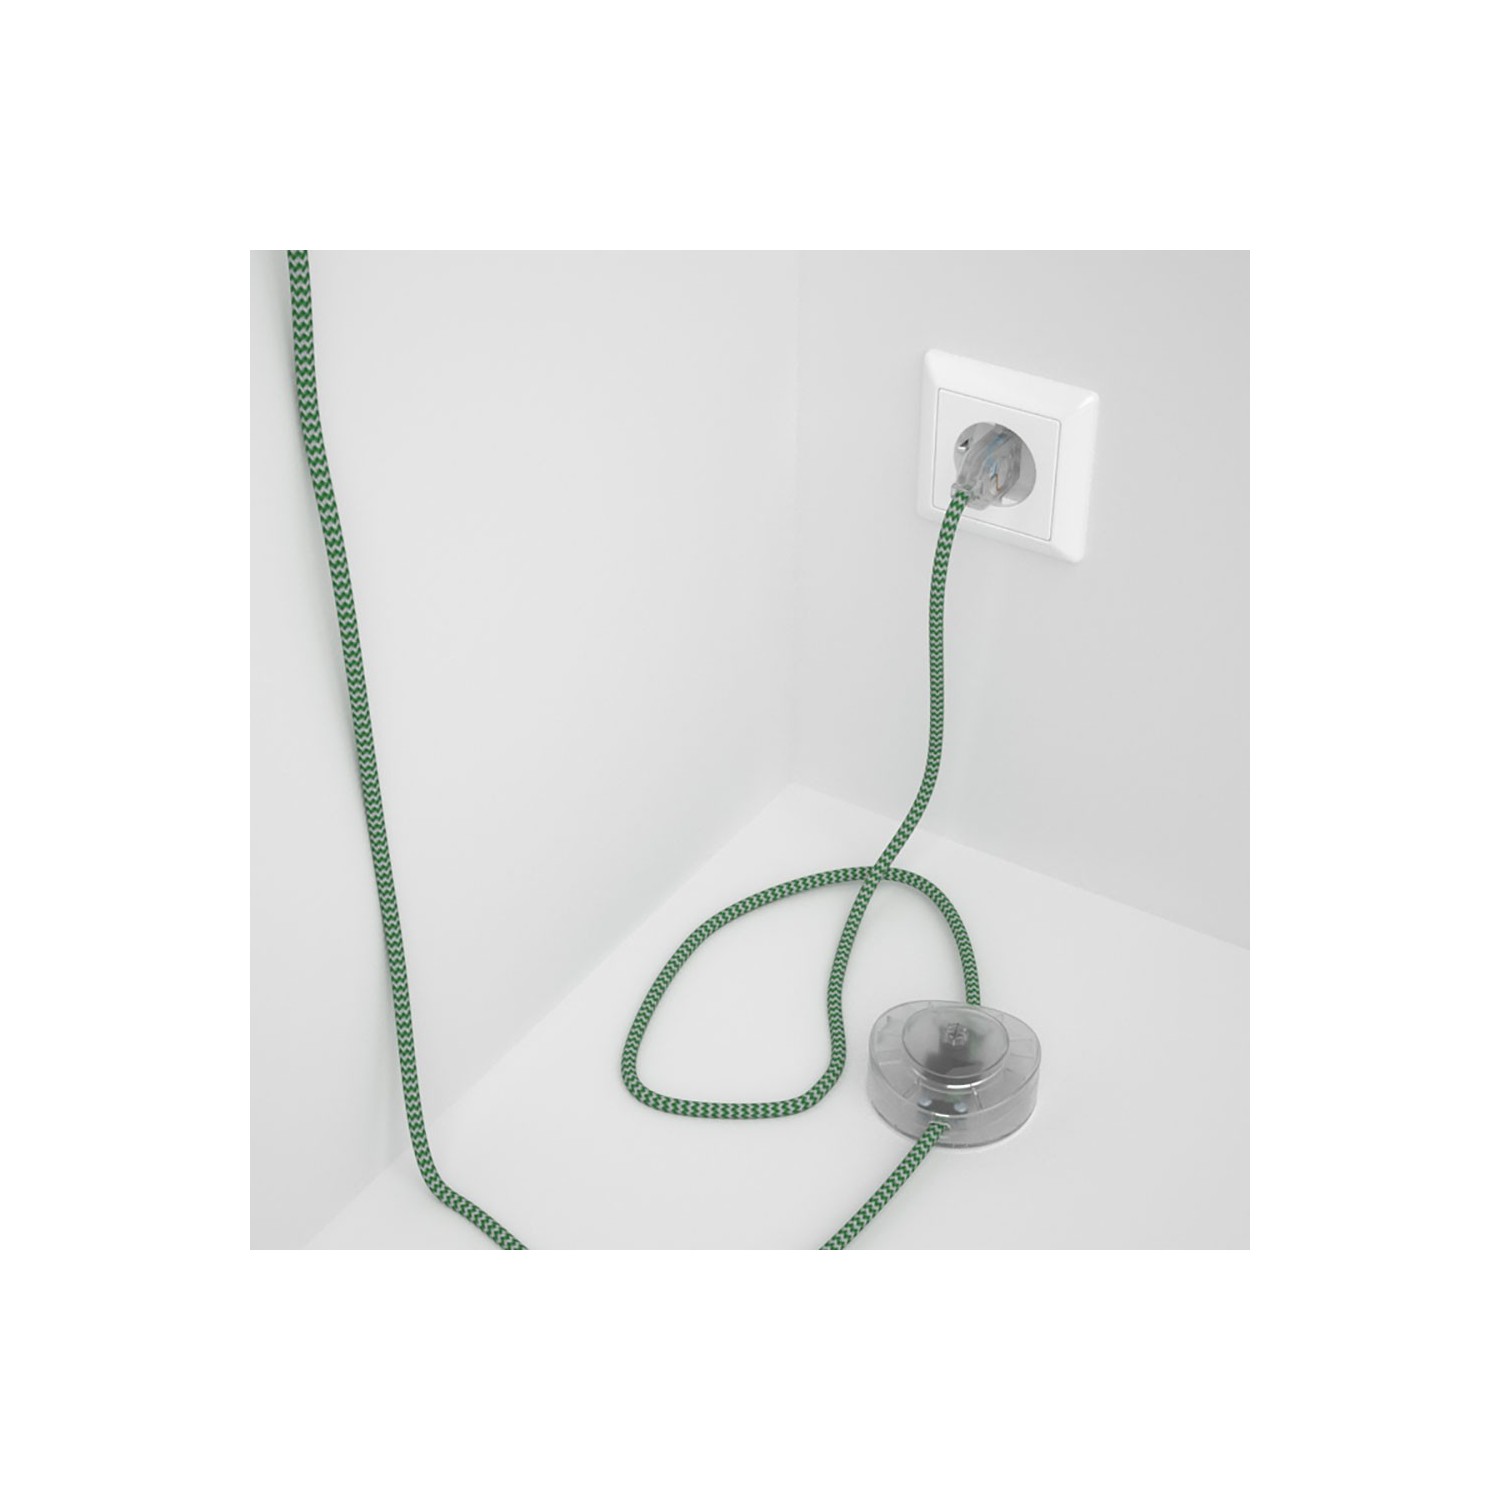 Υφασματινο Καλώδιο για Φωτιστικά Δαπέδου Zig Zag Άσπρο-Πράσινο RZ06 - 3 m. Με διακόπτη ποδός και φις.